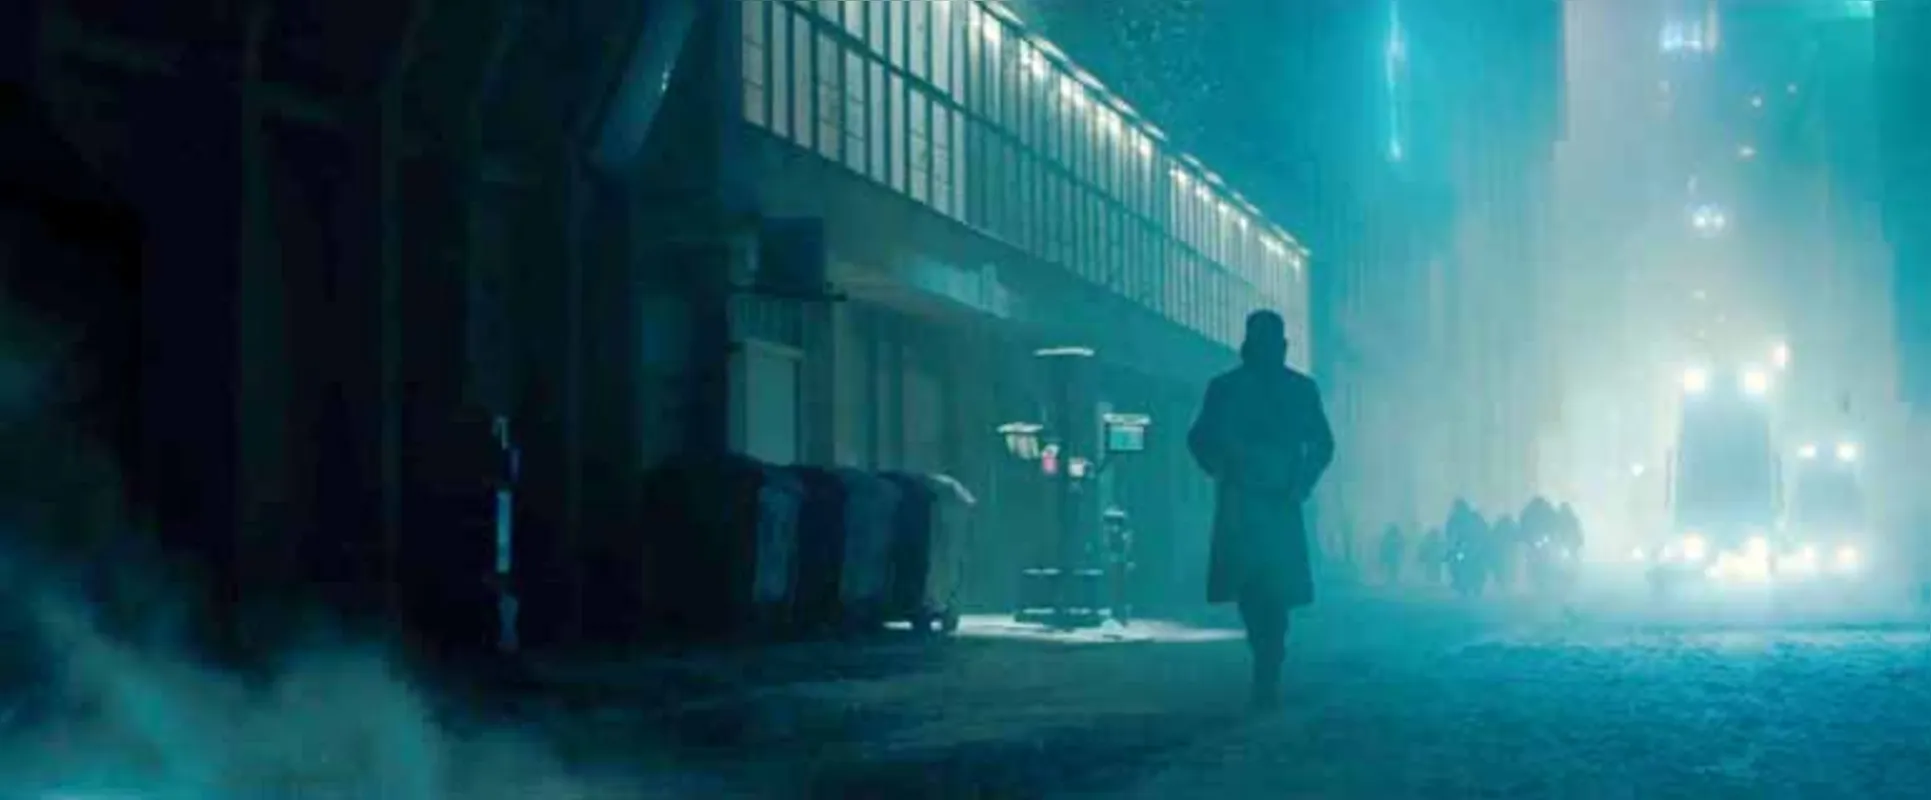 Blade Runner  2049:  cada cena está meticulosamente estudada, tanto em exteriores como nos interiores que definem os personagens